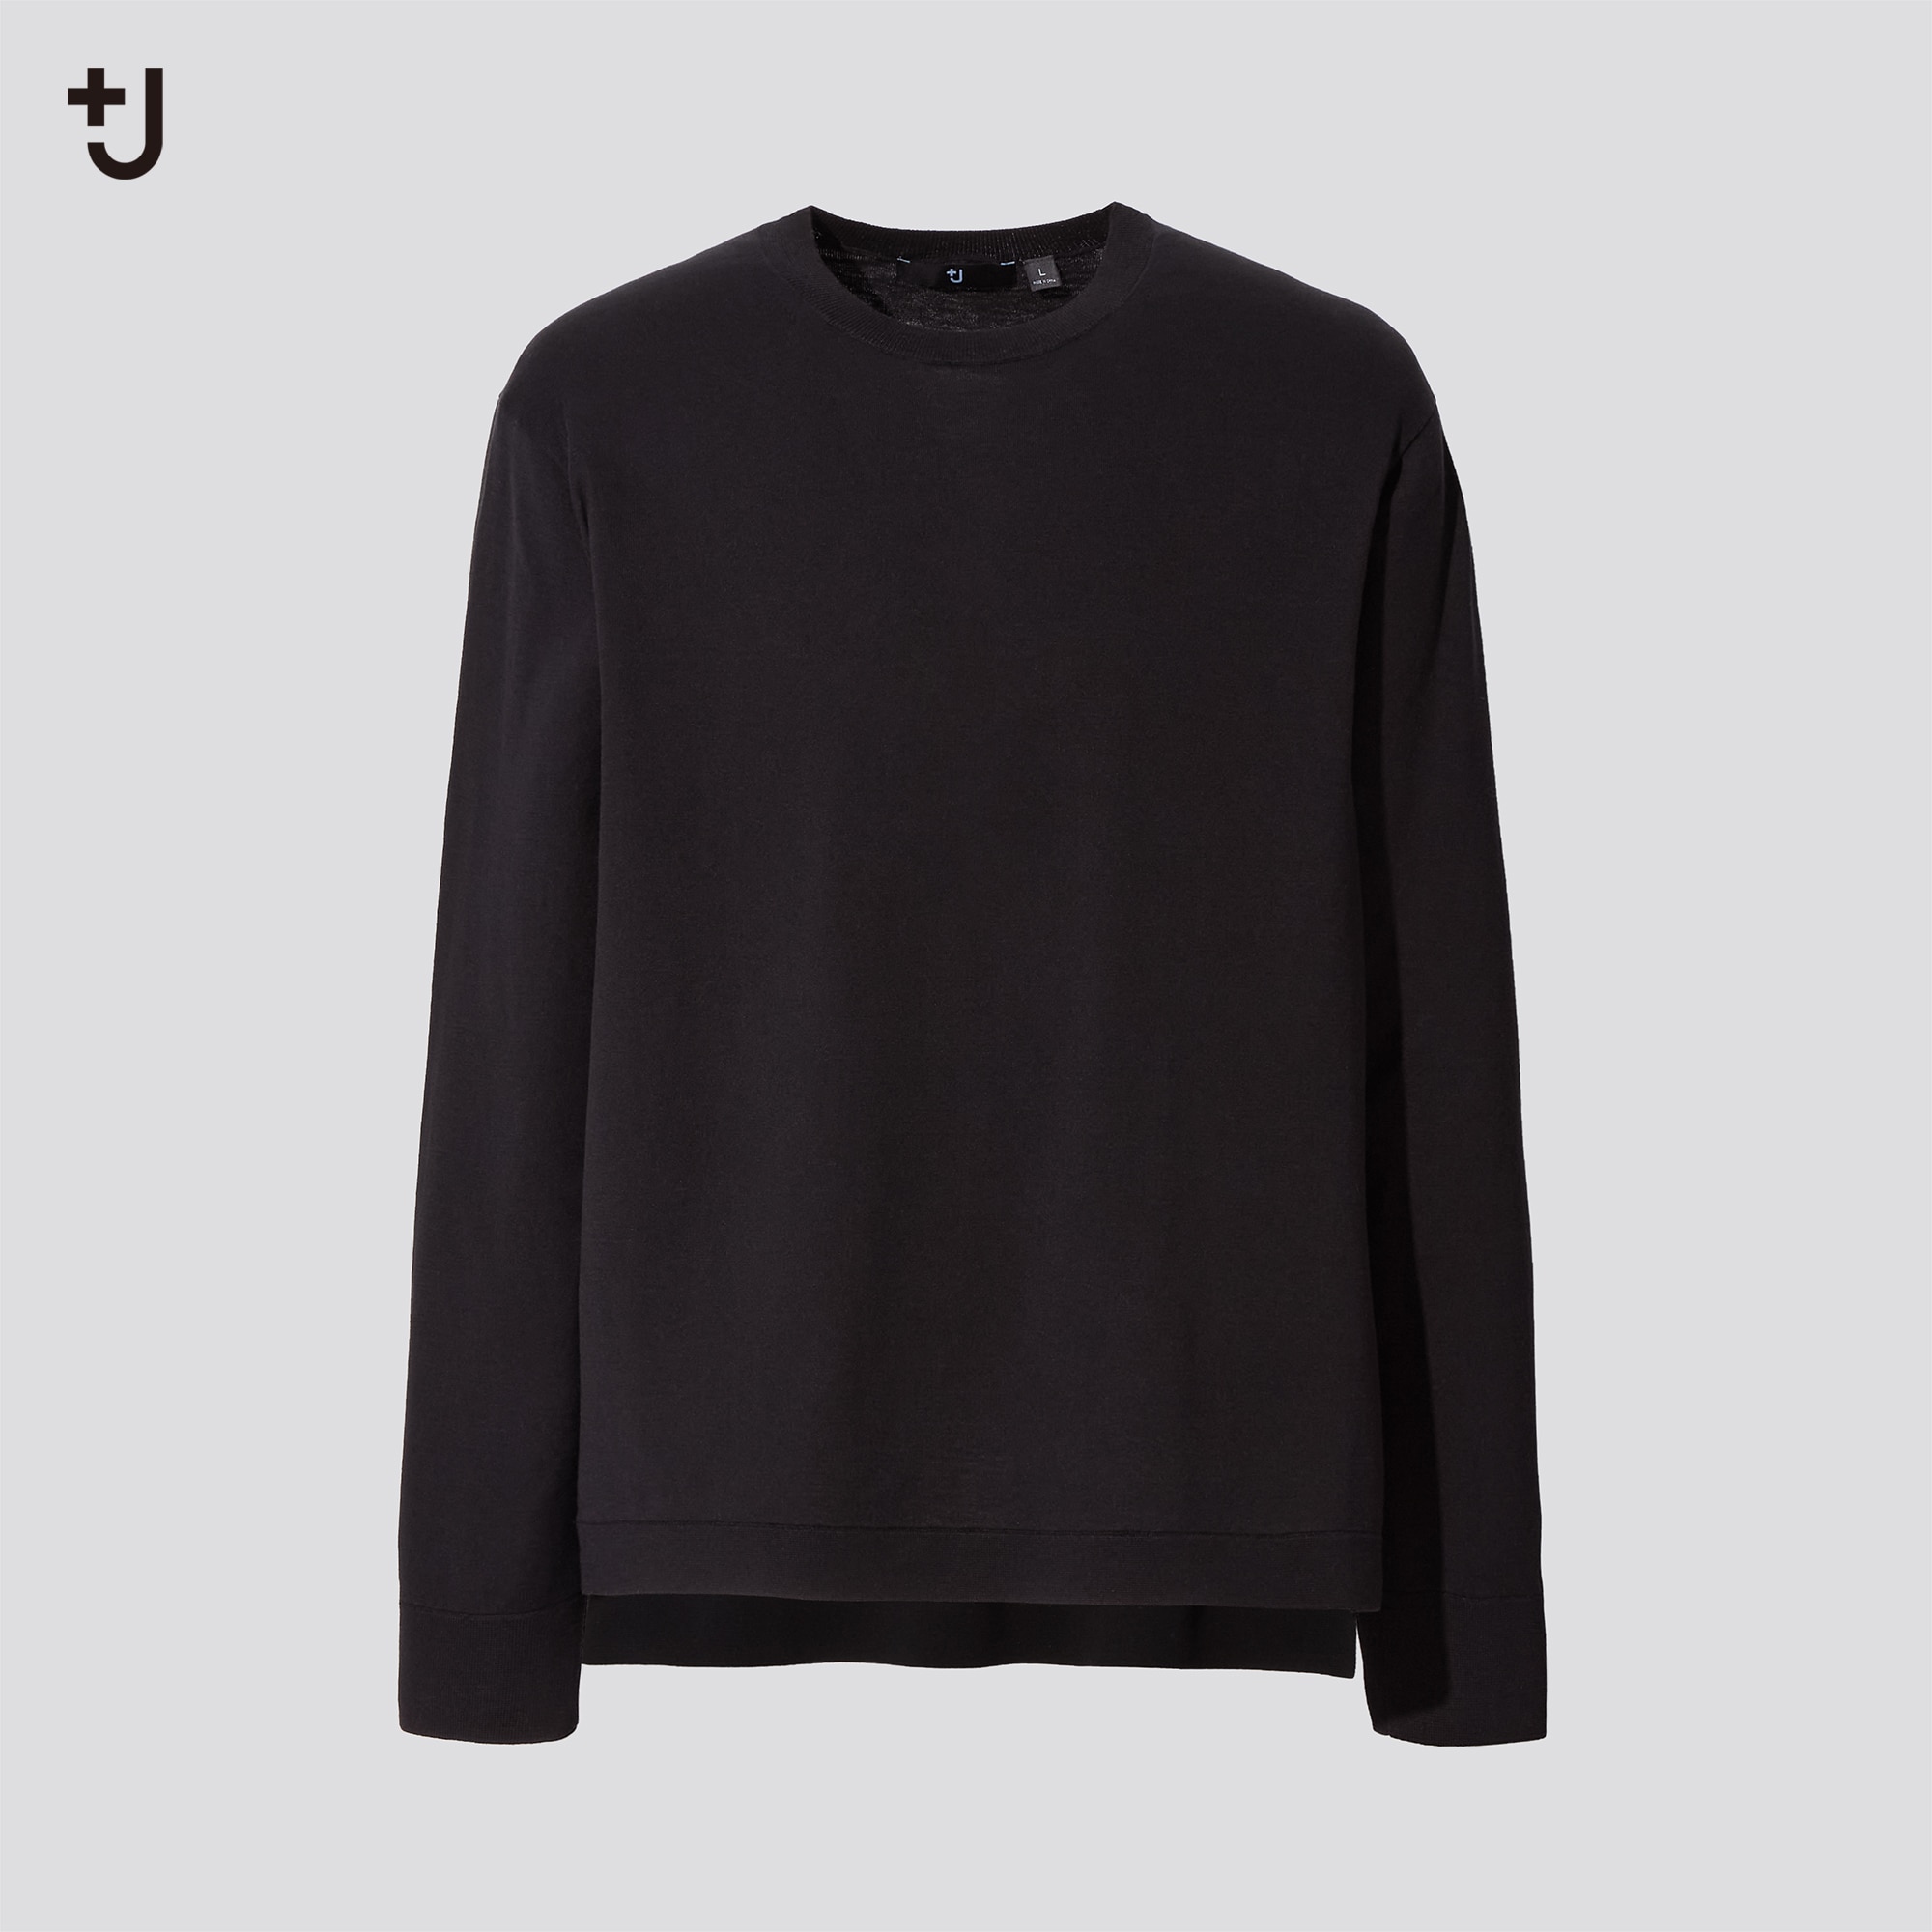 ニット/セーター【即購入OK】 ユニクロ +J シルクコットンクルーネックセーター